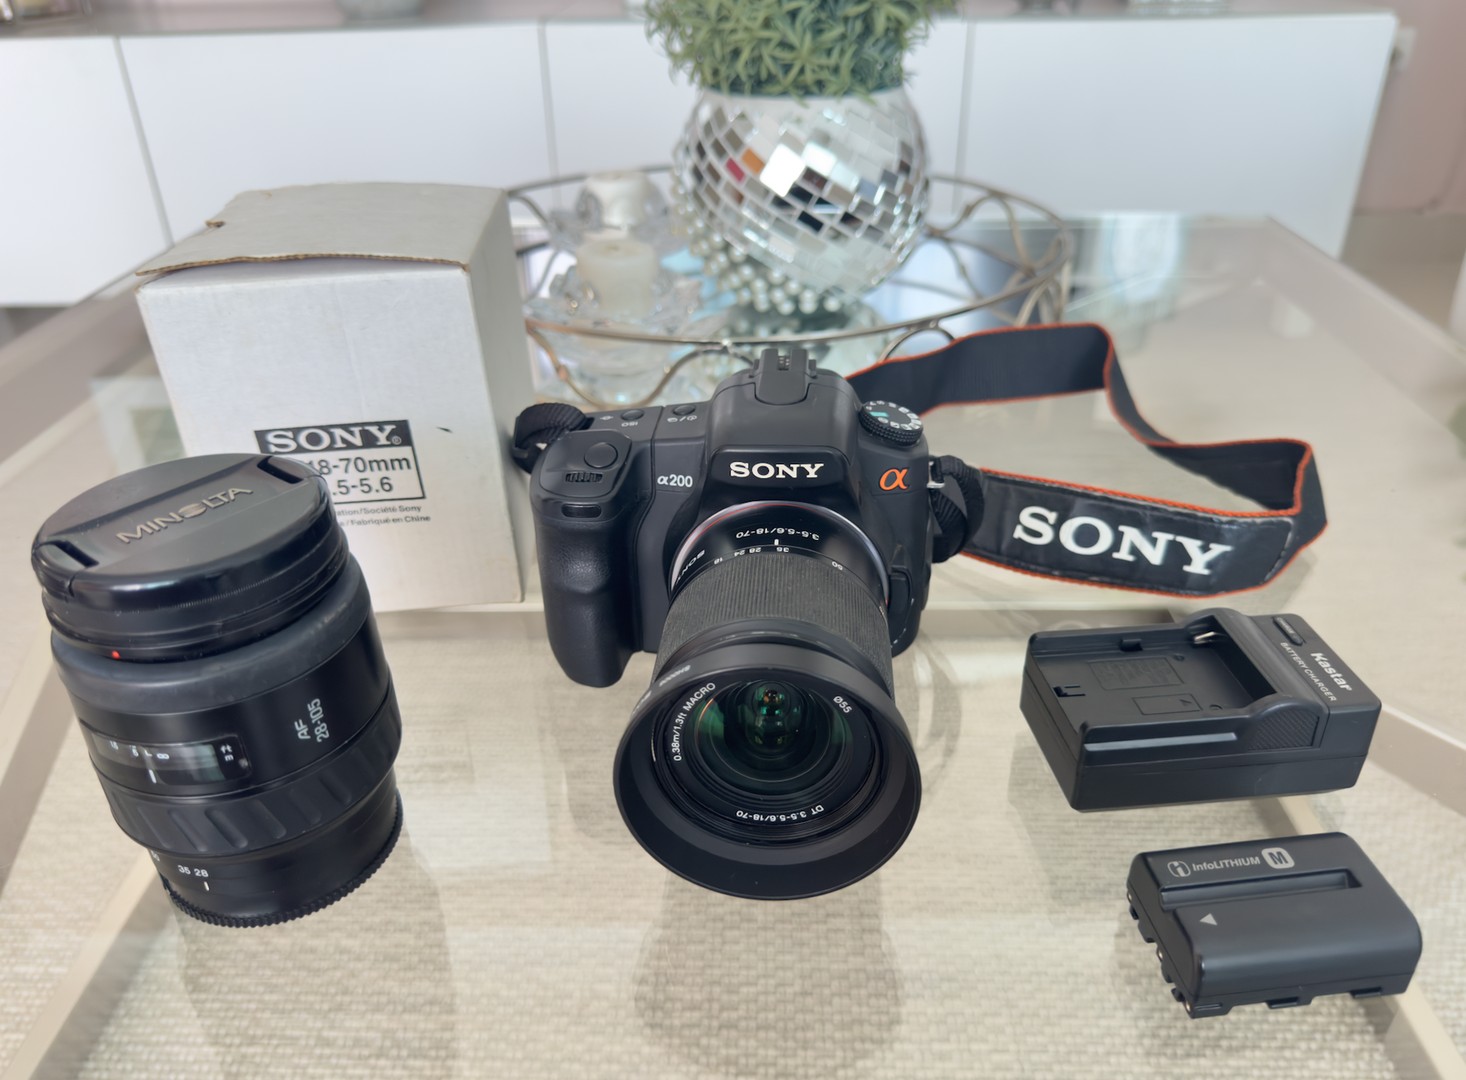 camaras y audio - Cámara Digital Sony Alpha A200 - Negra con dos lentes  de 18-70 mm y 66mm 0